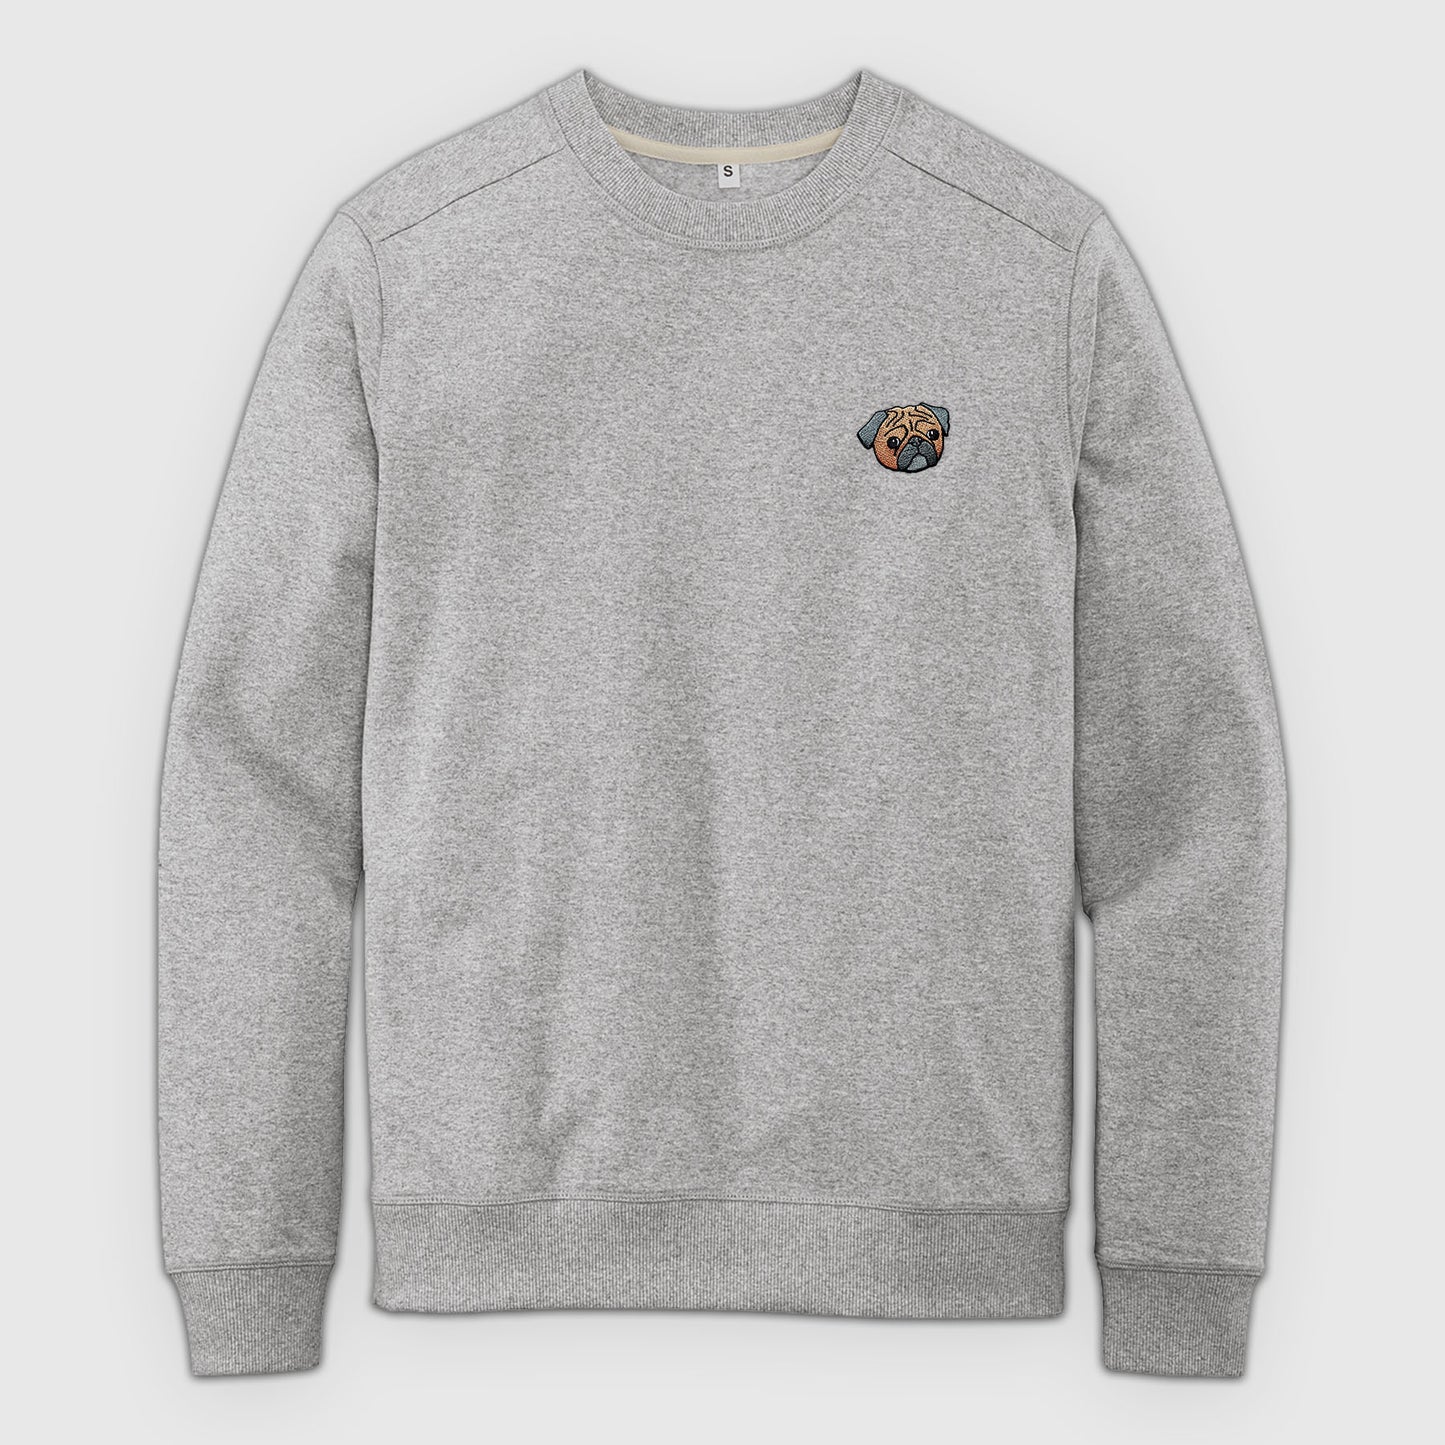 Custom Dog Crewneck Sweater